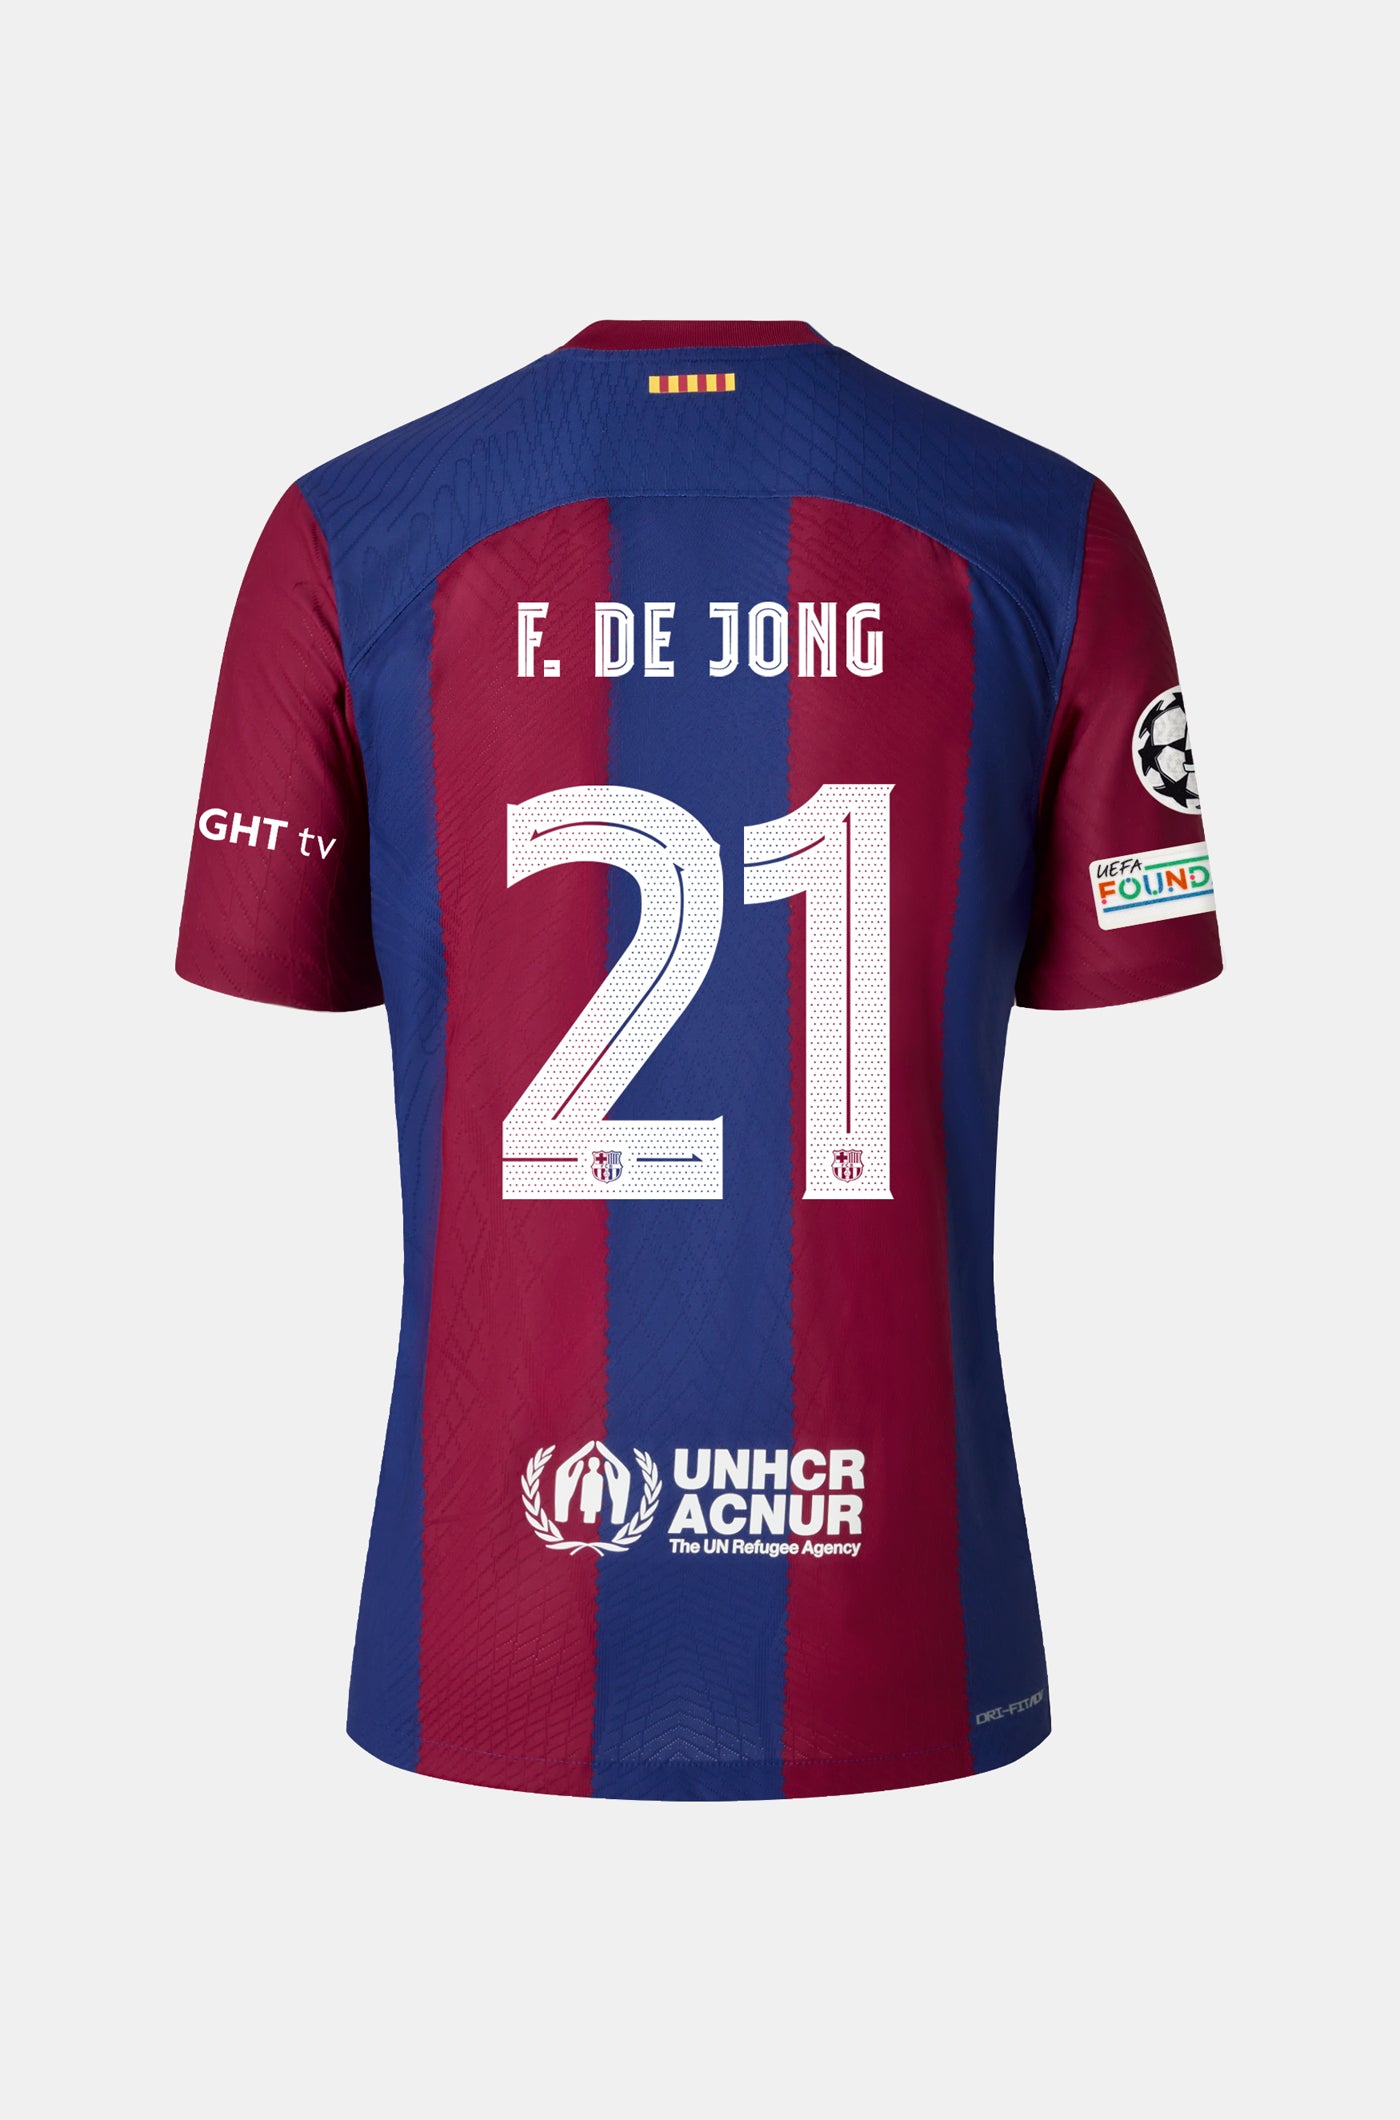 UCL FC Barcelona home shirt 23/24 - F. DE JONG